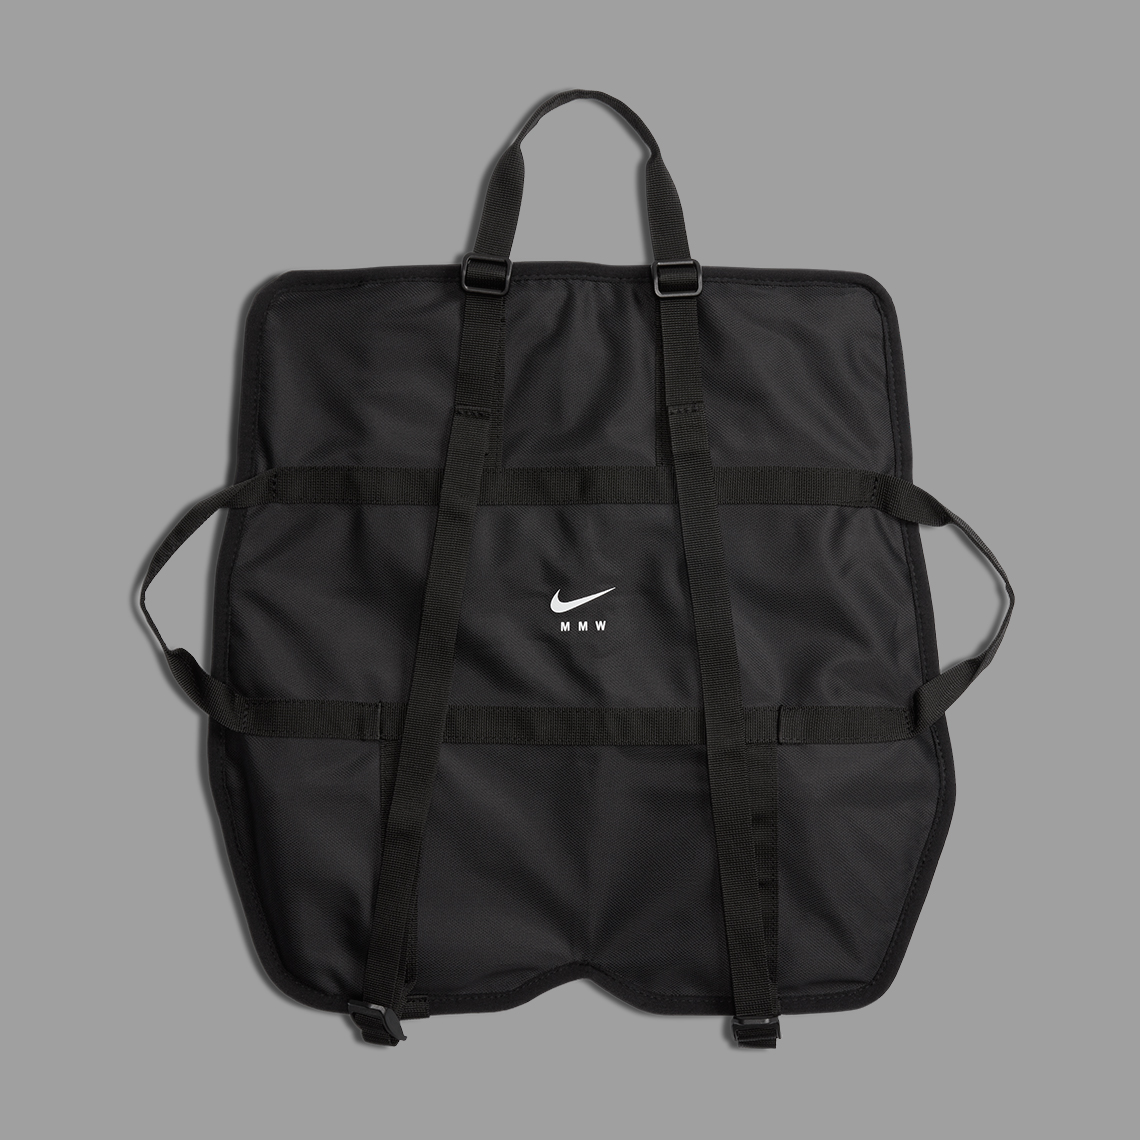 Nike Mmw 005 Slide Bag